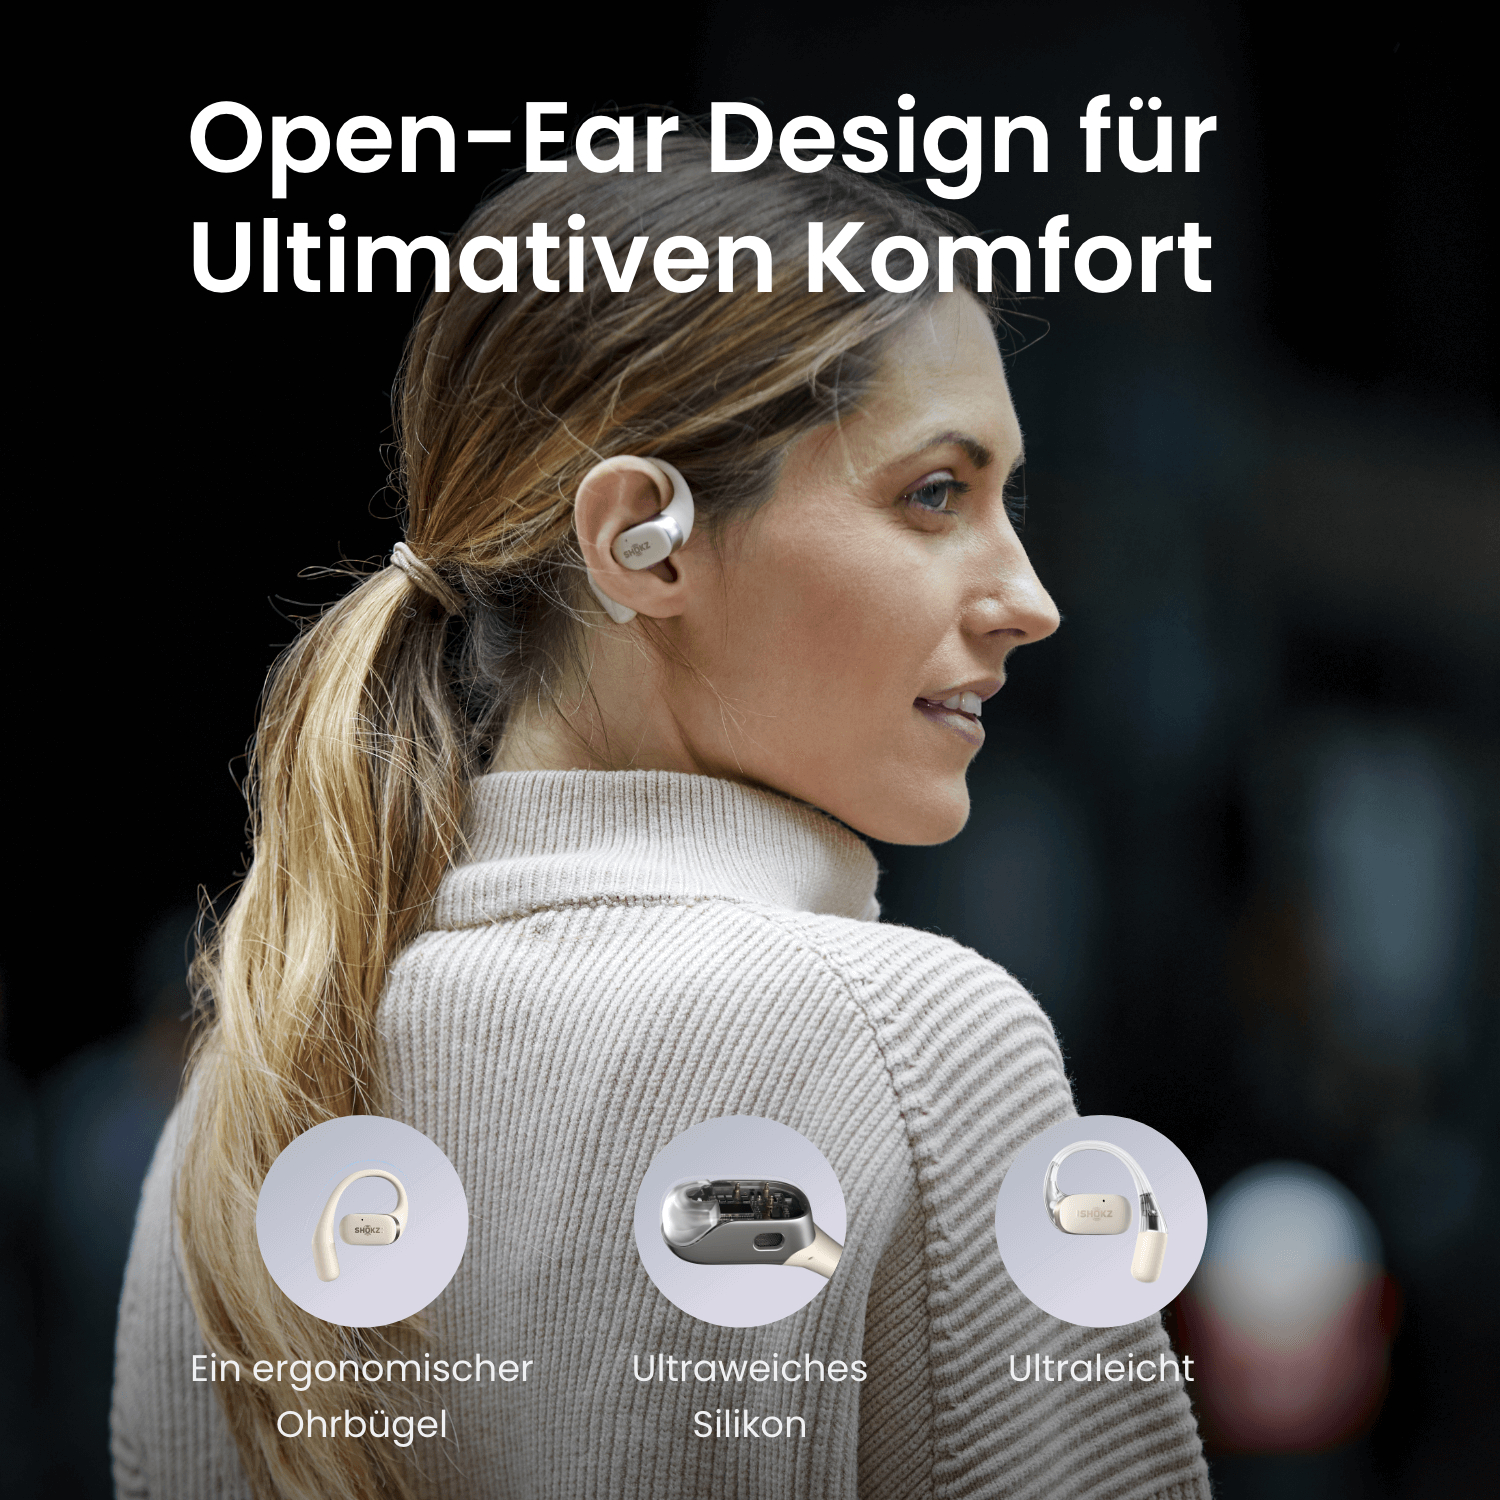 SHOKZ OpenFit, In-ear Kopfhörer Bluetooth Beige